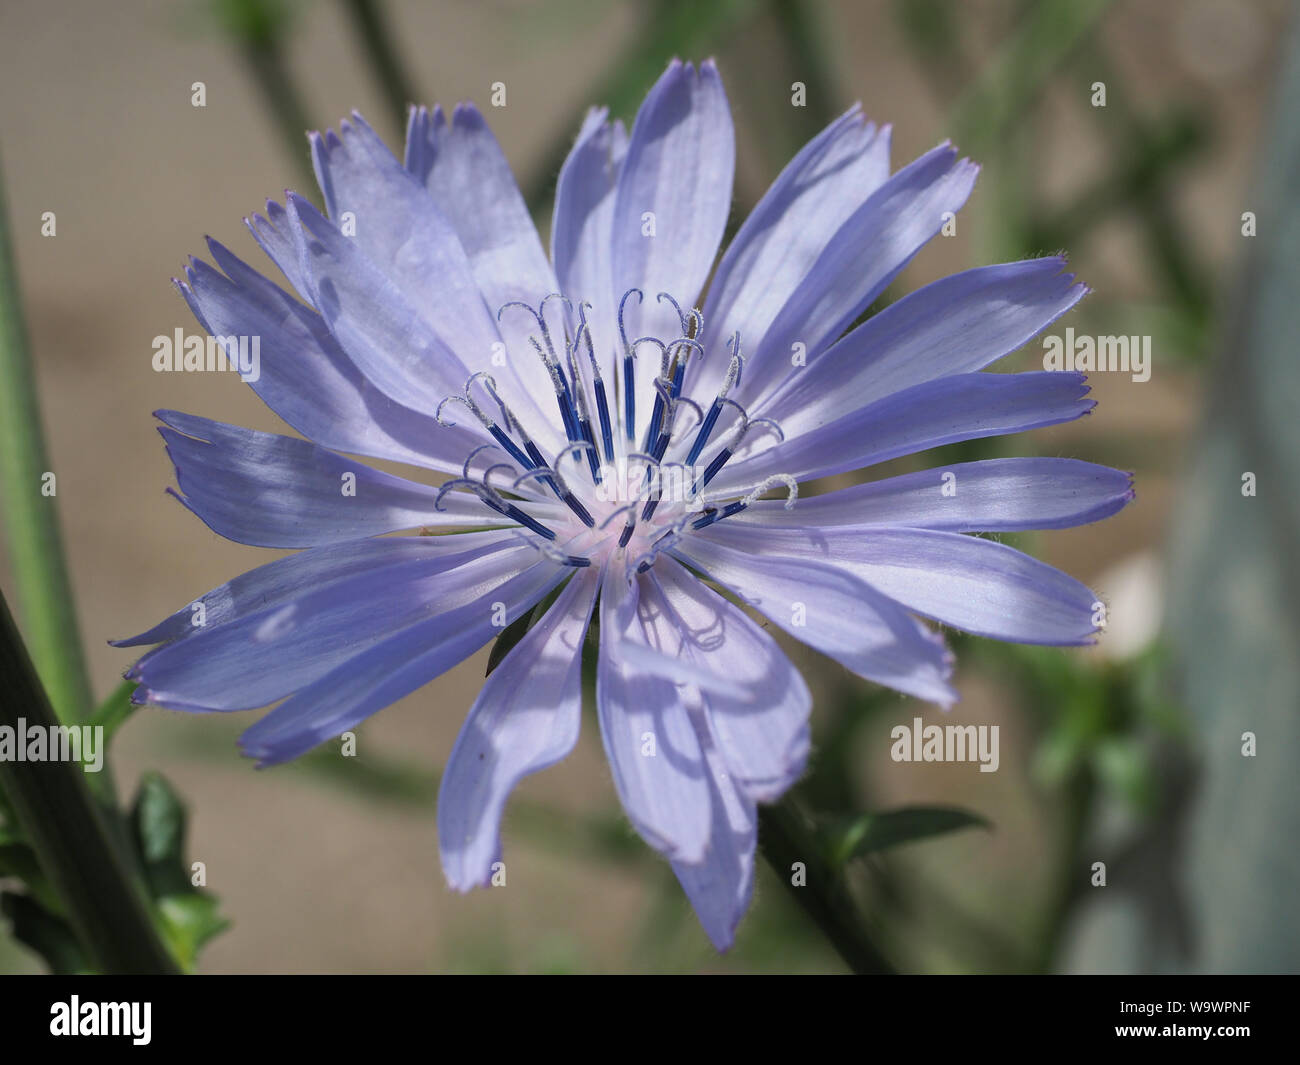 Chicorée Cichorium intybus ou commune de fleurs communément appelé marins bleu, chicorée, café, mauvaises herbes ou succory est une plante herbacée. Close up. Banque D'Images